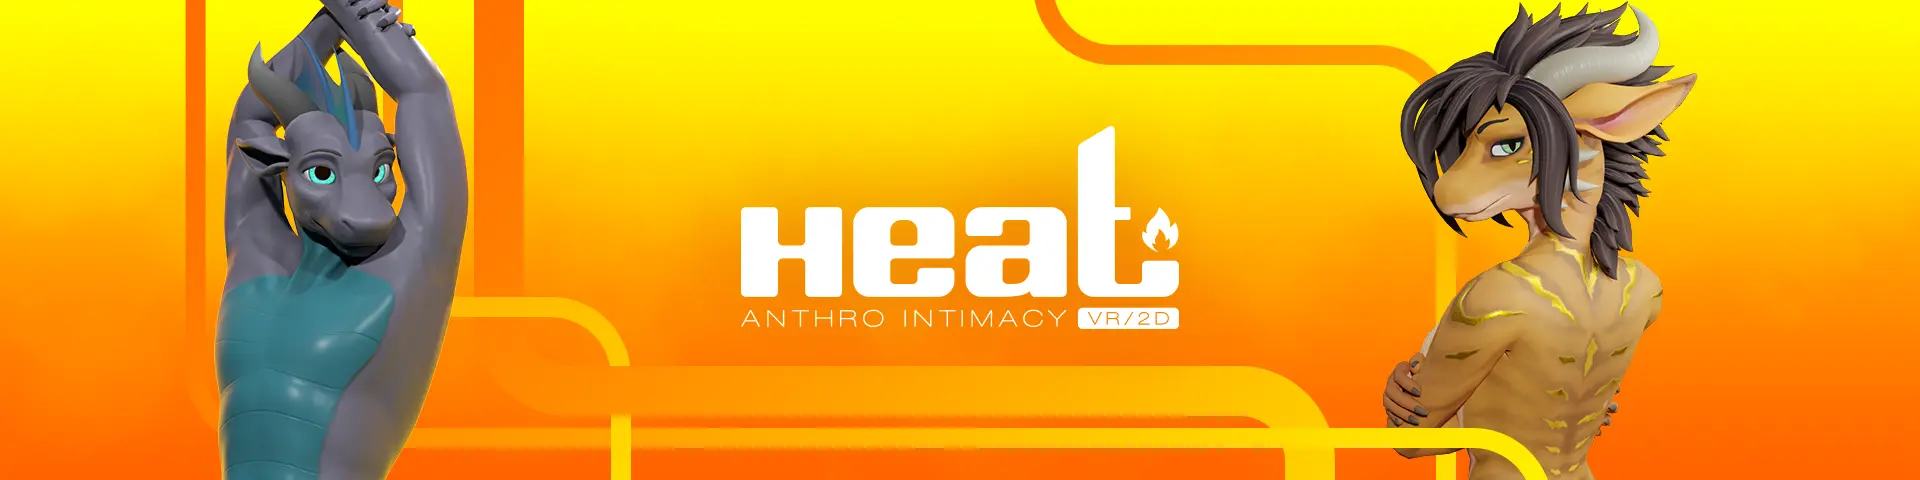 Heat [v0.1.8.1] main image